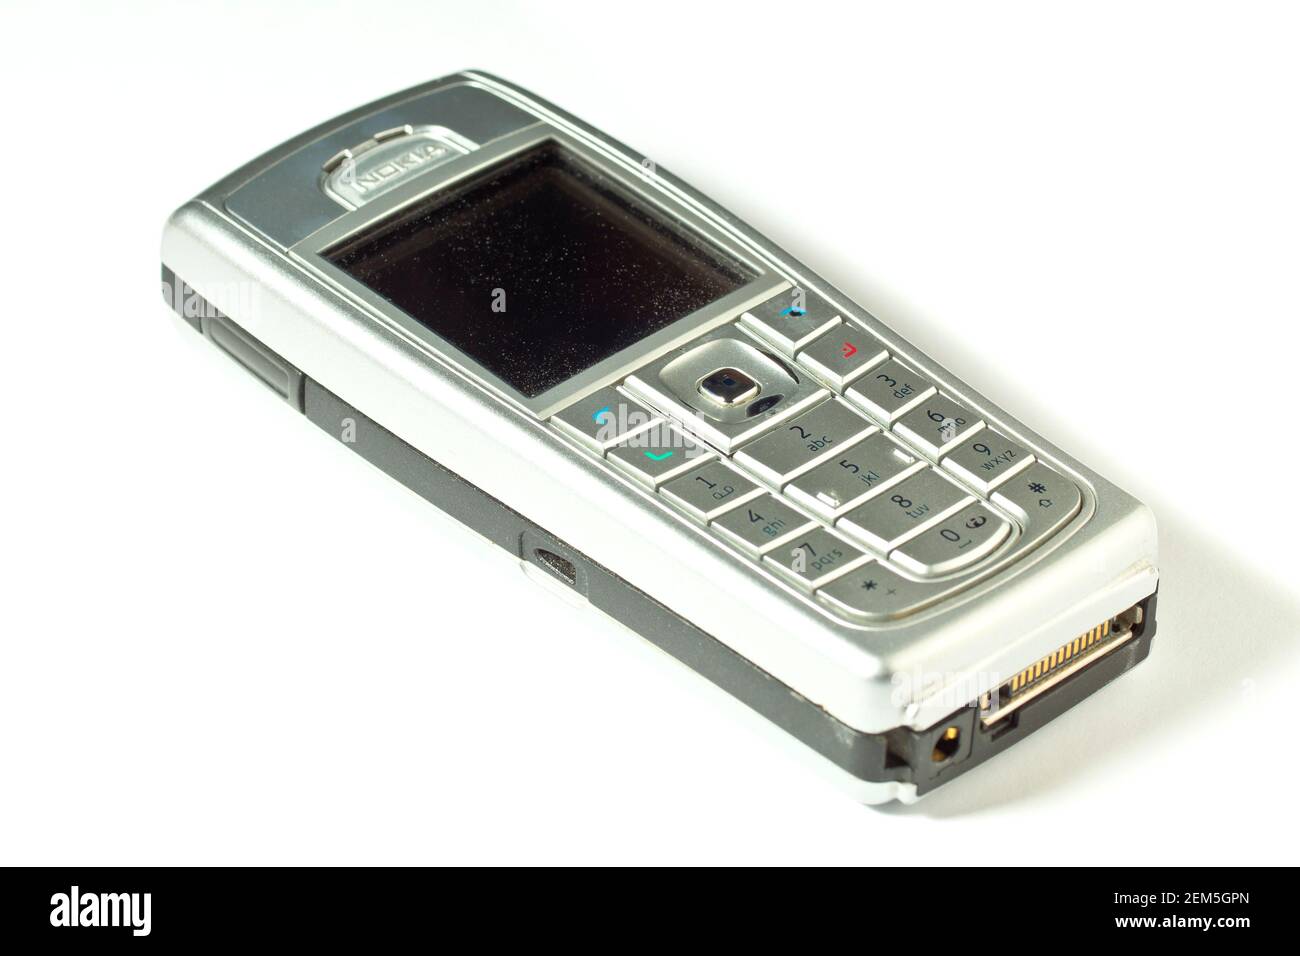 Nokia 6230i, un telefono cellulare a caramelle classico e più venduto dei primi anni 2000. Foto Stock